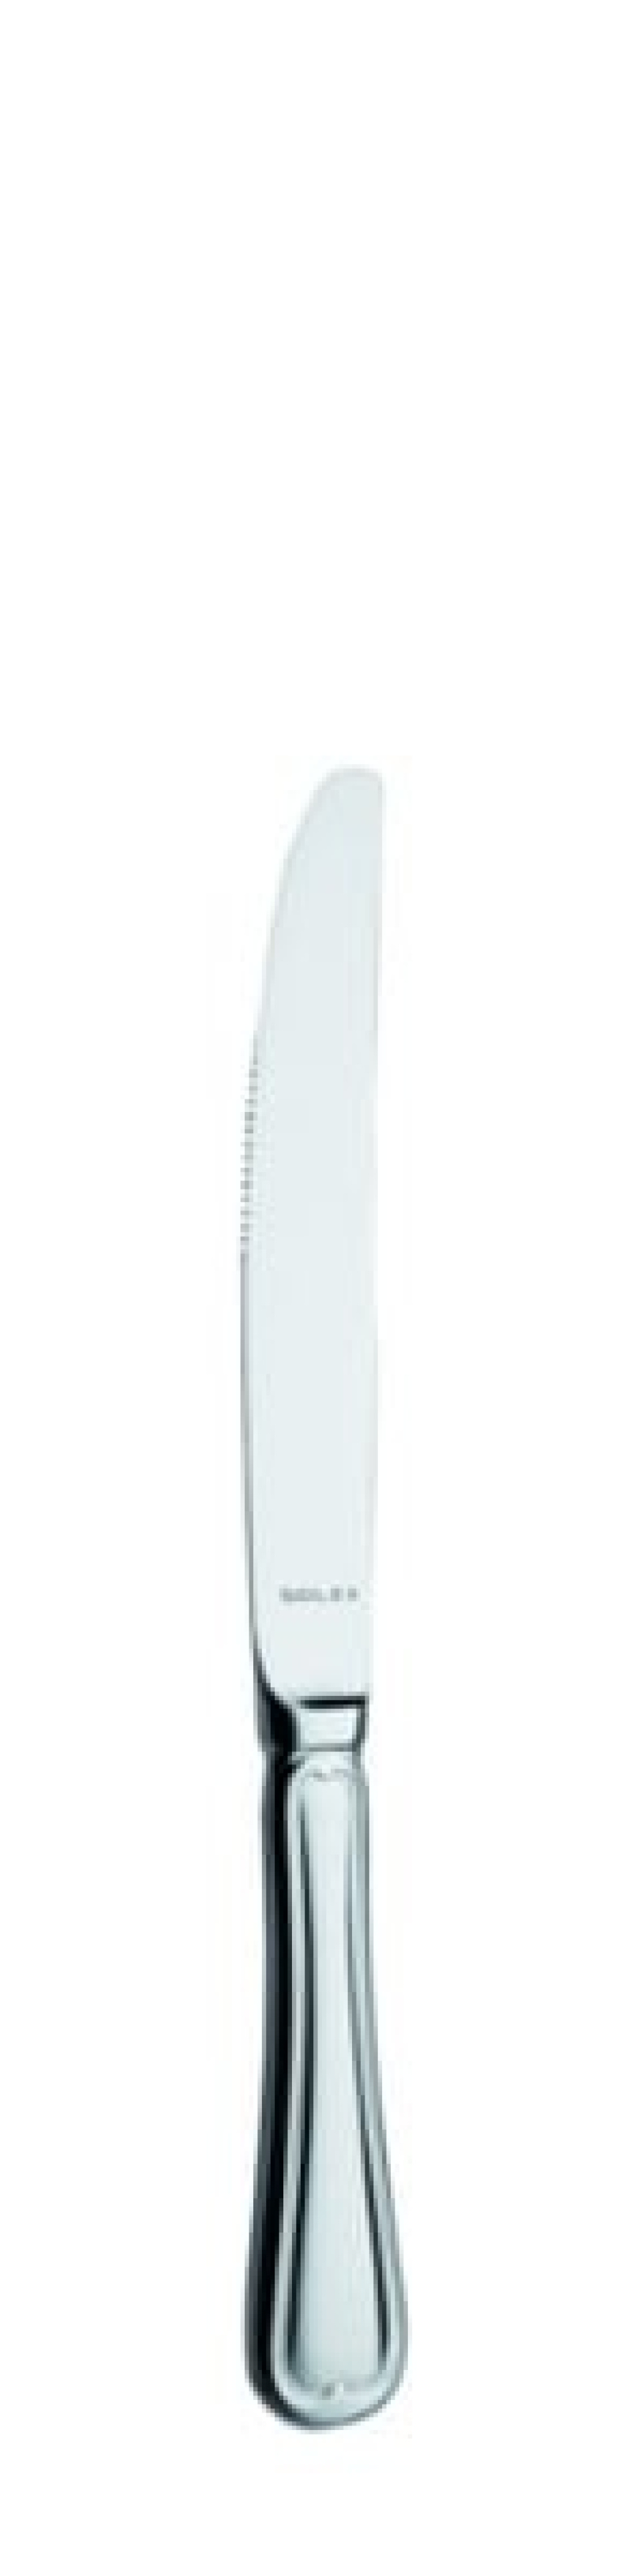 Laila Dessertmesser 211 mm - Solex in der Gruppe Tischgedeck / Besteck / Messer bei The Kitchen Lab (1284-21547)